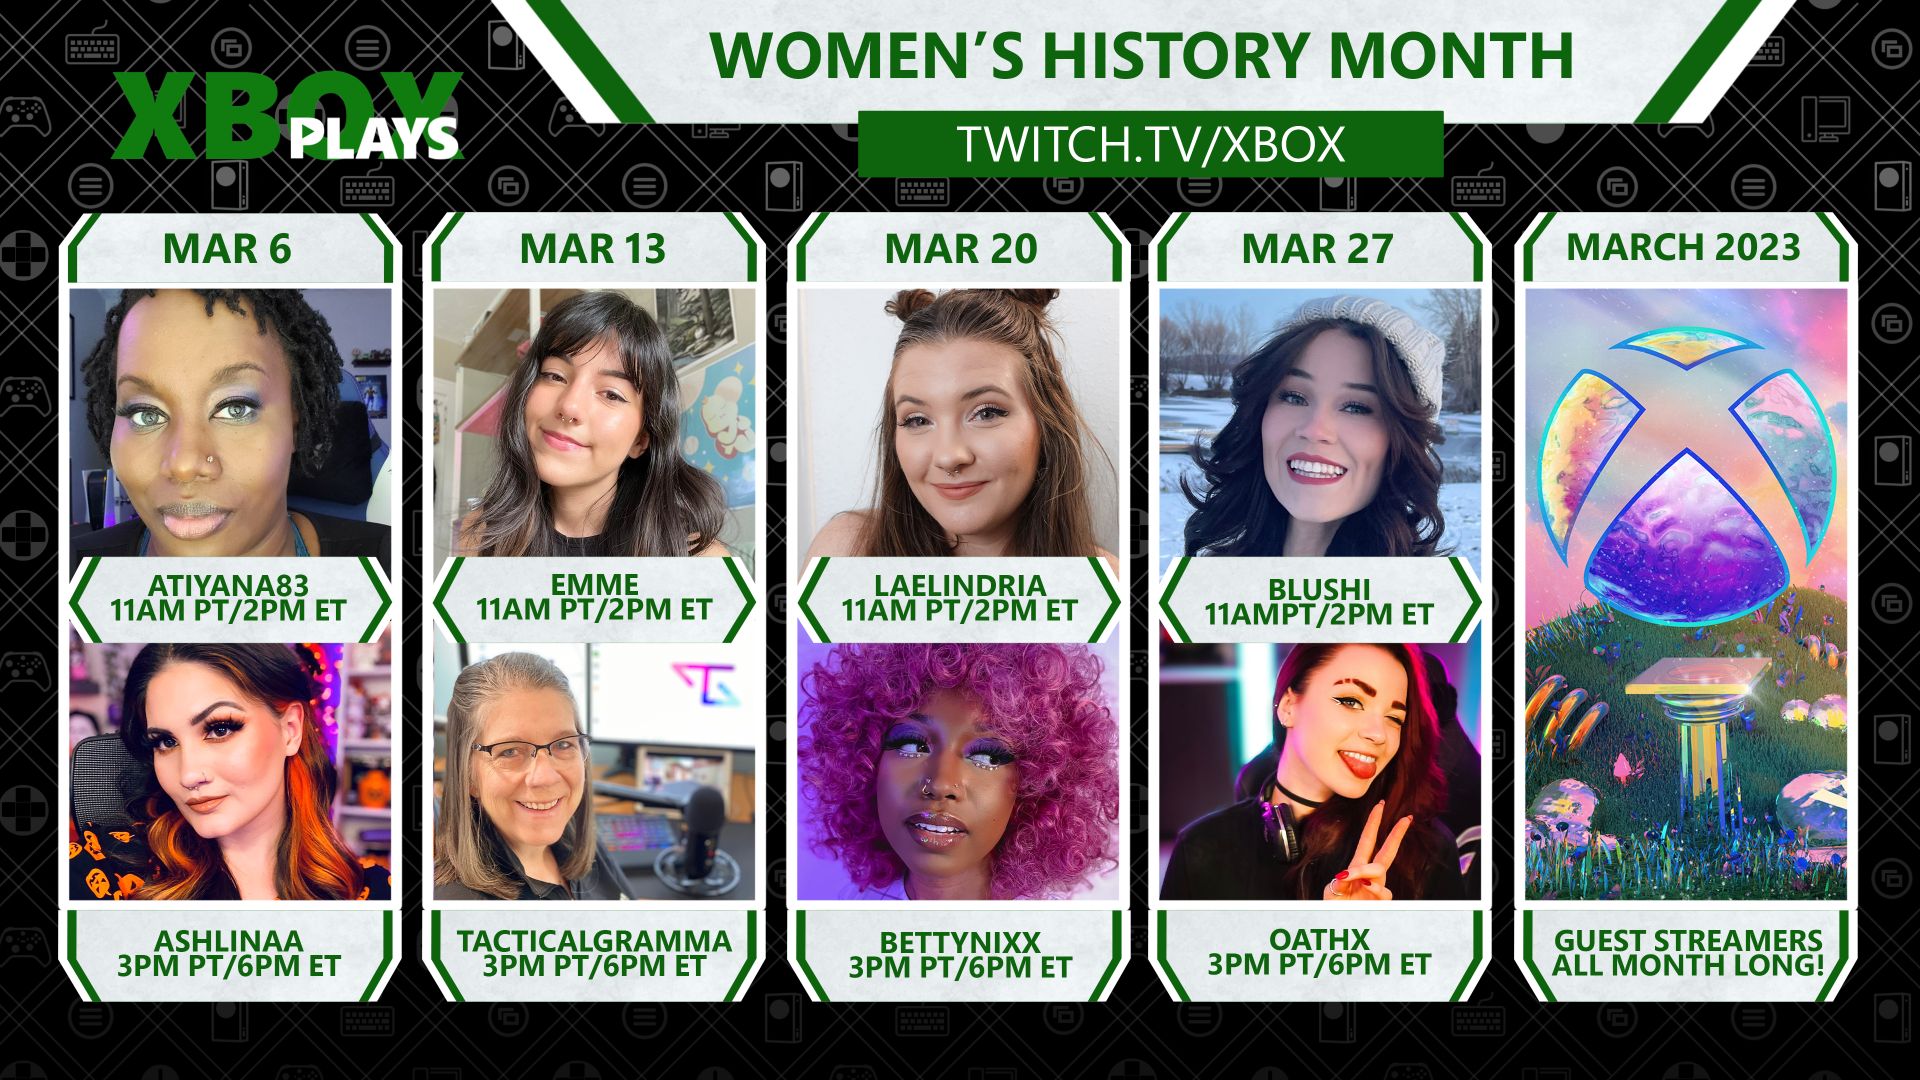 Gambar kompilasi yang menampilkan delapan gamer wanita di Xbox Plays for Women's History Month di twitch.tv/xbox.